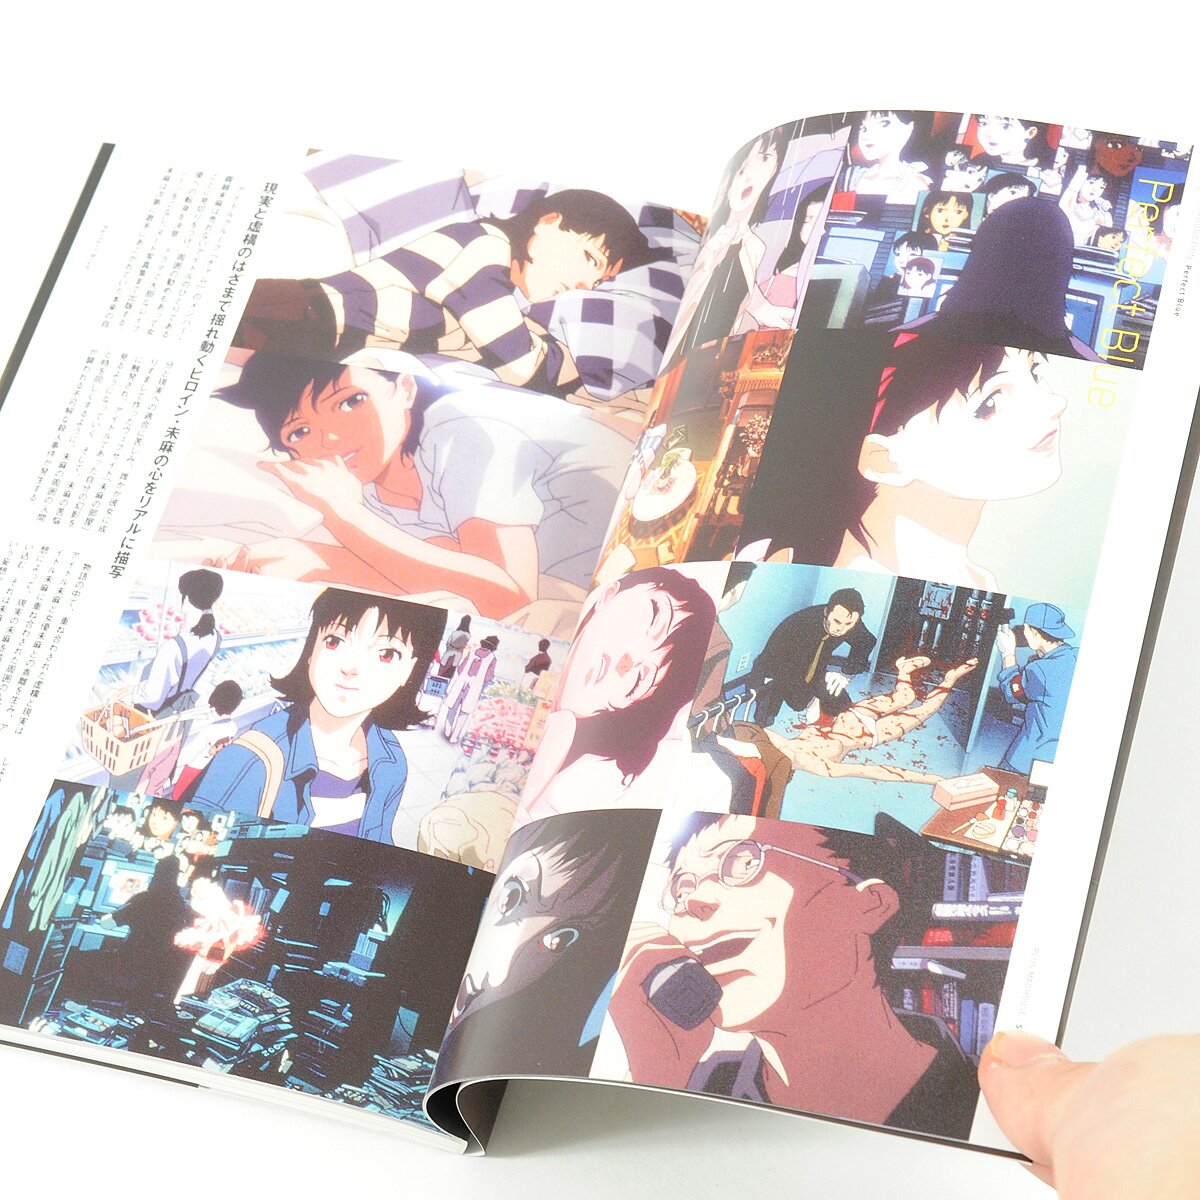 A Guide to the Anime Auteur Satoshi Kon